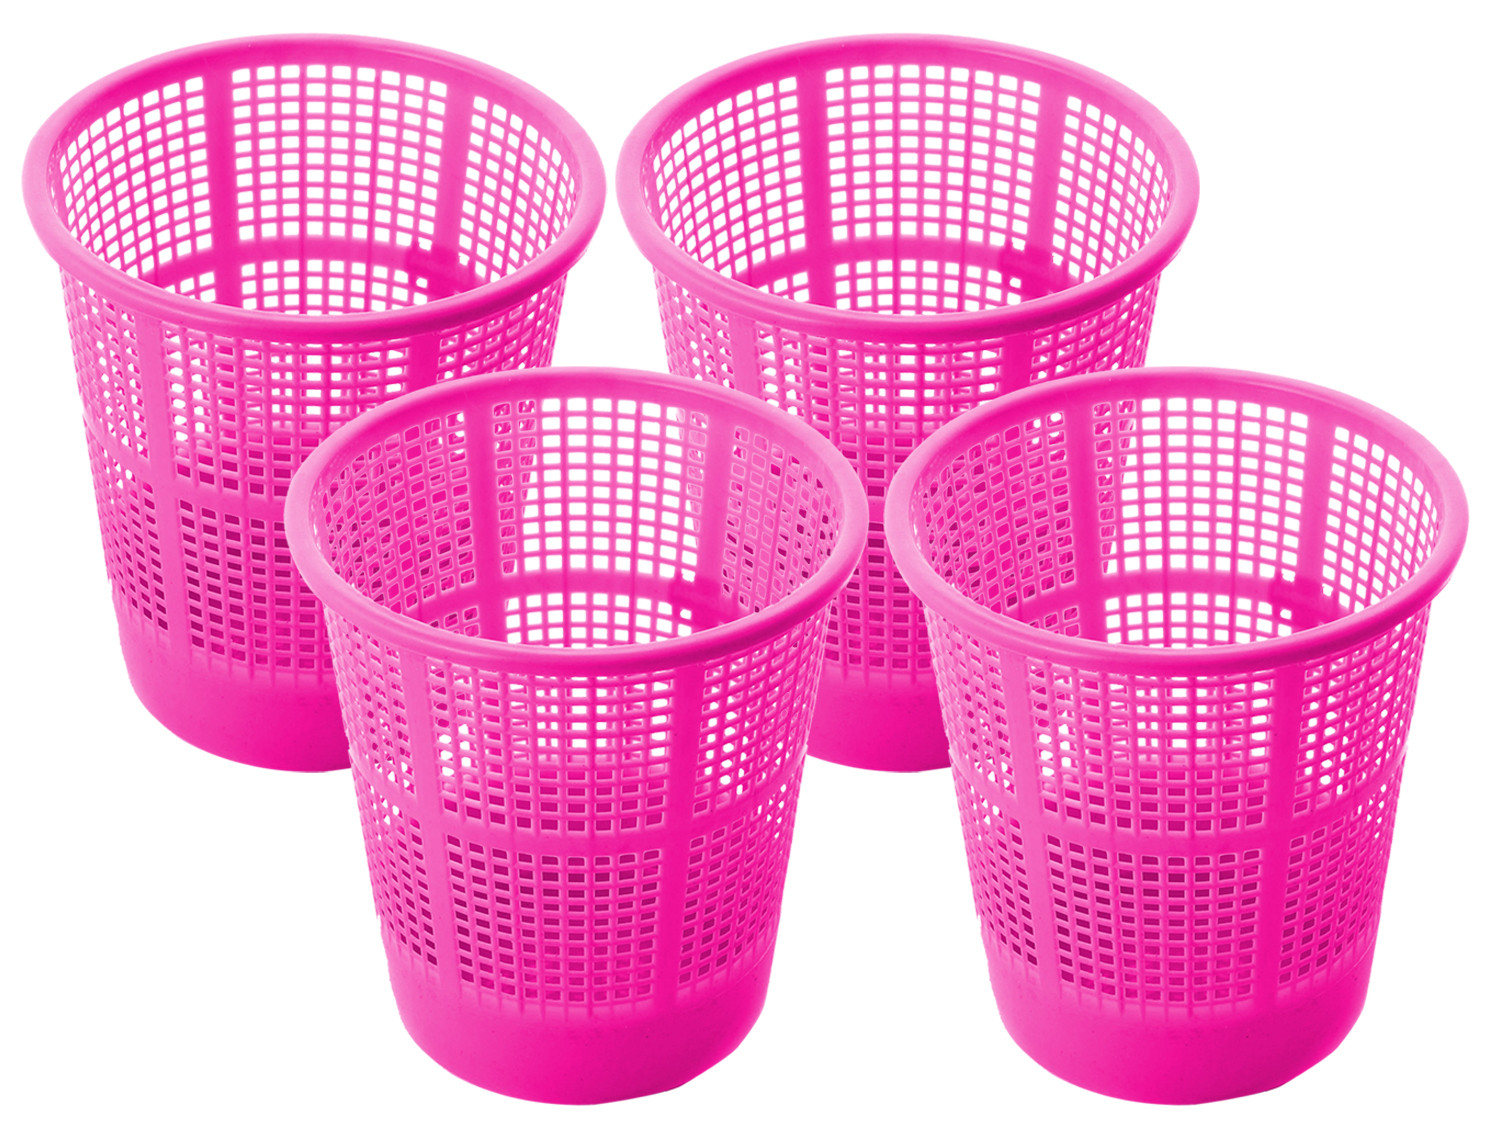 Kuber Industries Plastic Mesh Dustbin Garbage Bin for Office use, School, Bedroom,Kids Room, Home, Multi Purpose,5 Liters (Pink)-KUBMART240